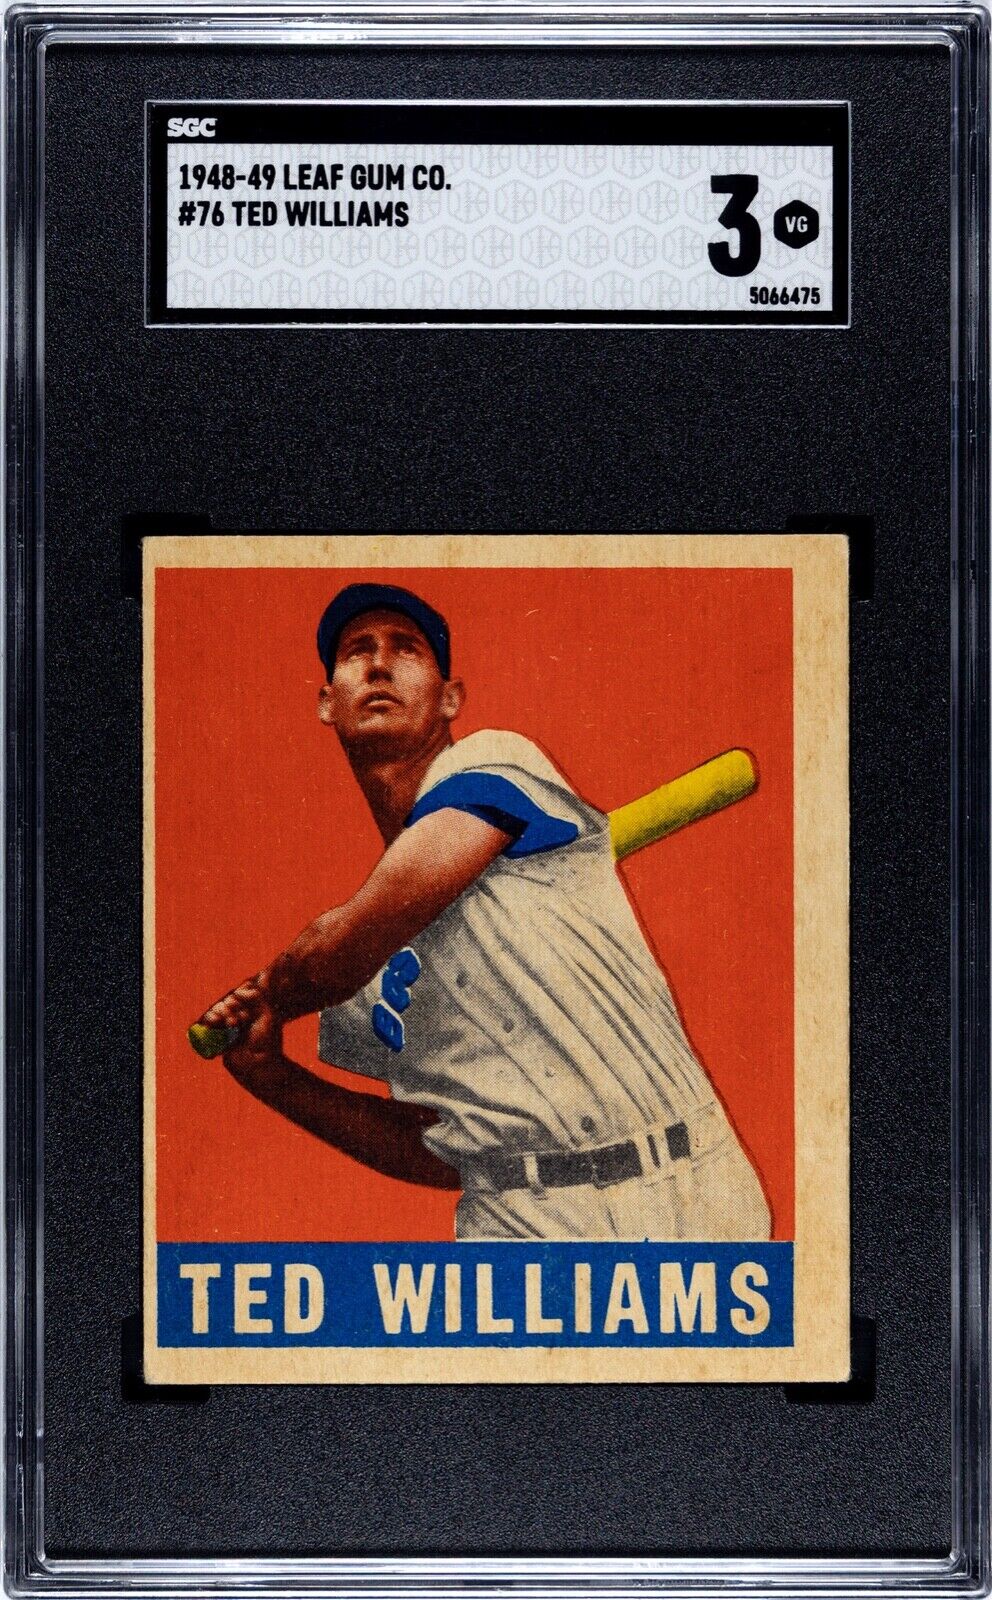 1948 Leaf #76 Ted Williams (DEC'D HOF) - SGC 3 VG  Sharp Corners & VERY NICE!!